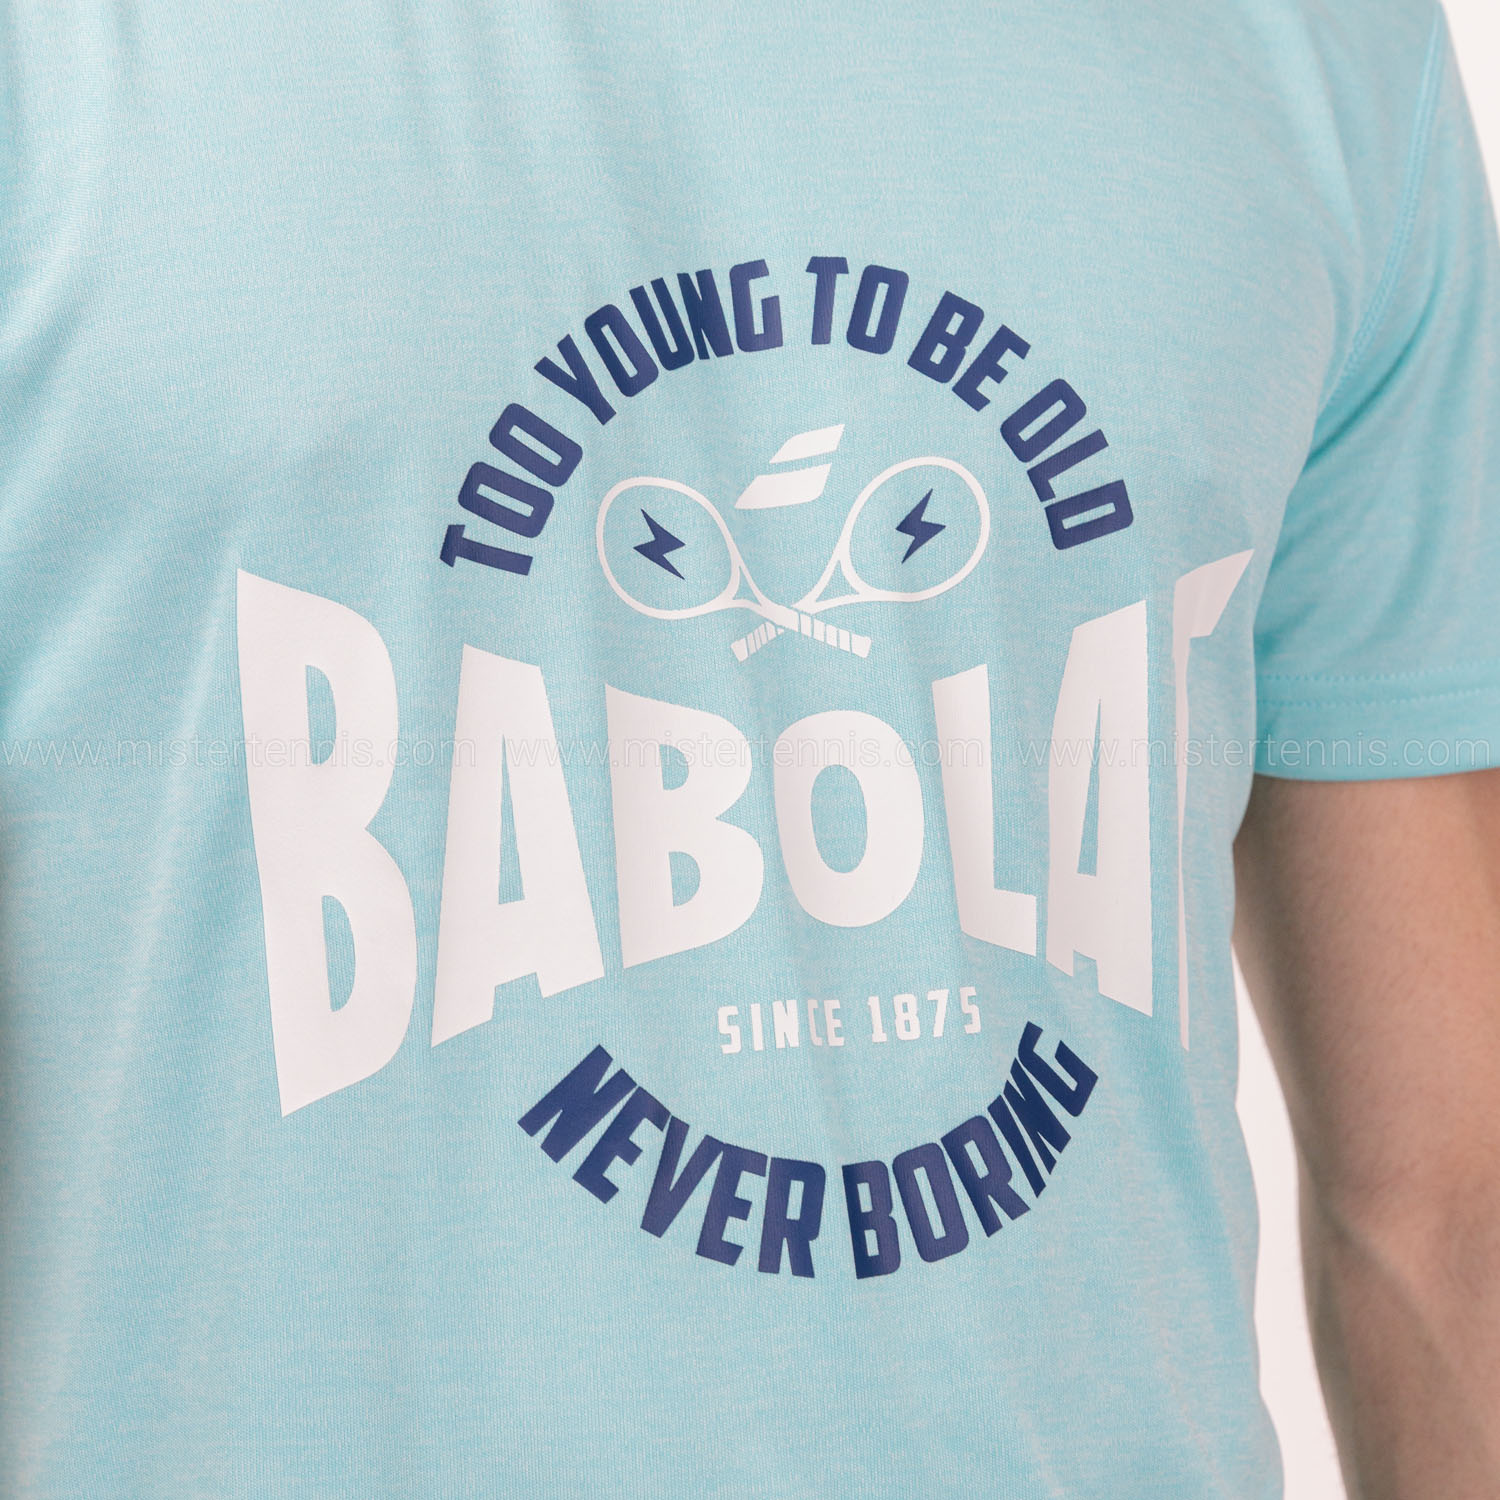 Babolat Exercise Graphic T-Shirt - Angel Blue Heather